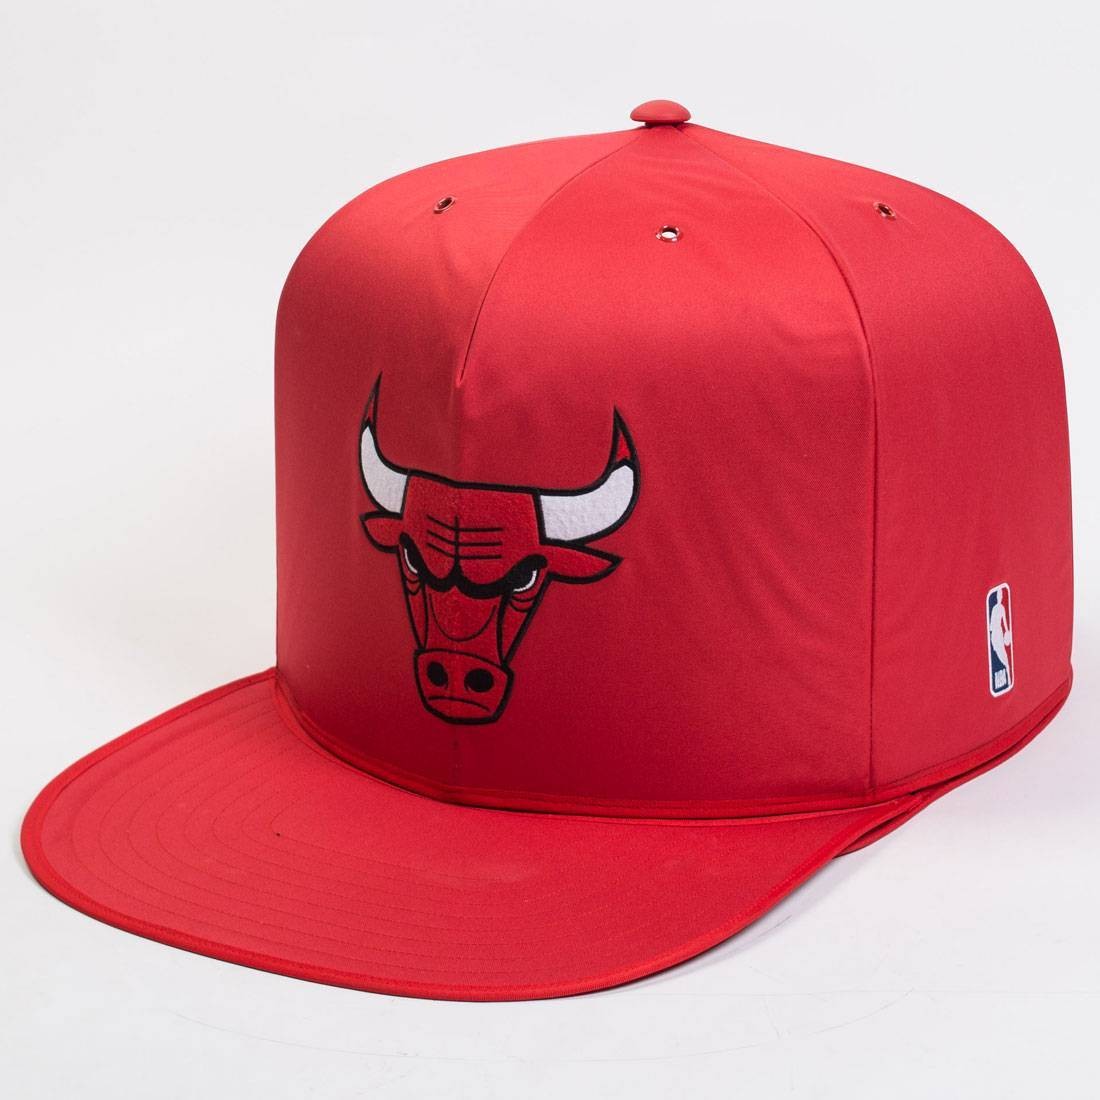 Снэпбэк Chicago bulls синяя. Панамка Чикаго Буллз. Красная бейсболка NBA. Бейсболка Chicago bulls 5 Day.